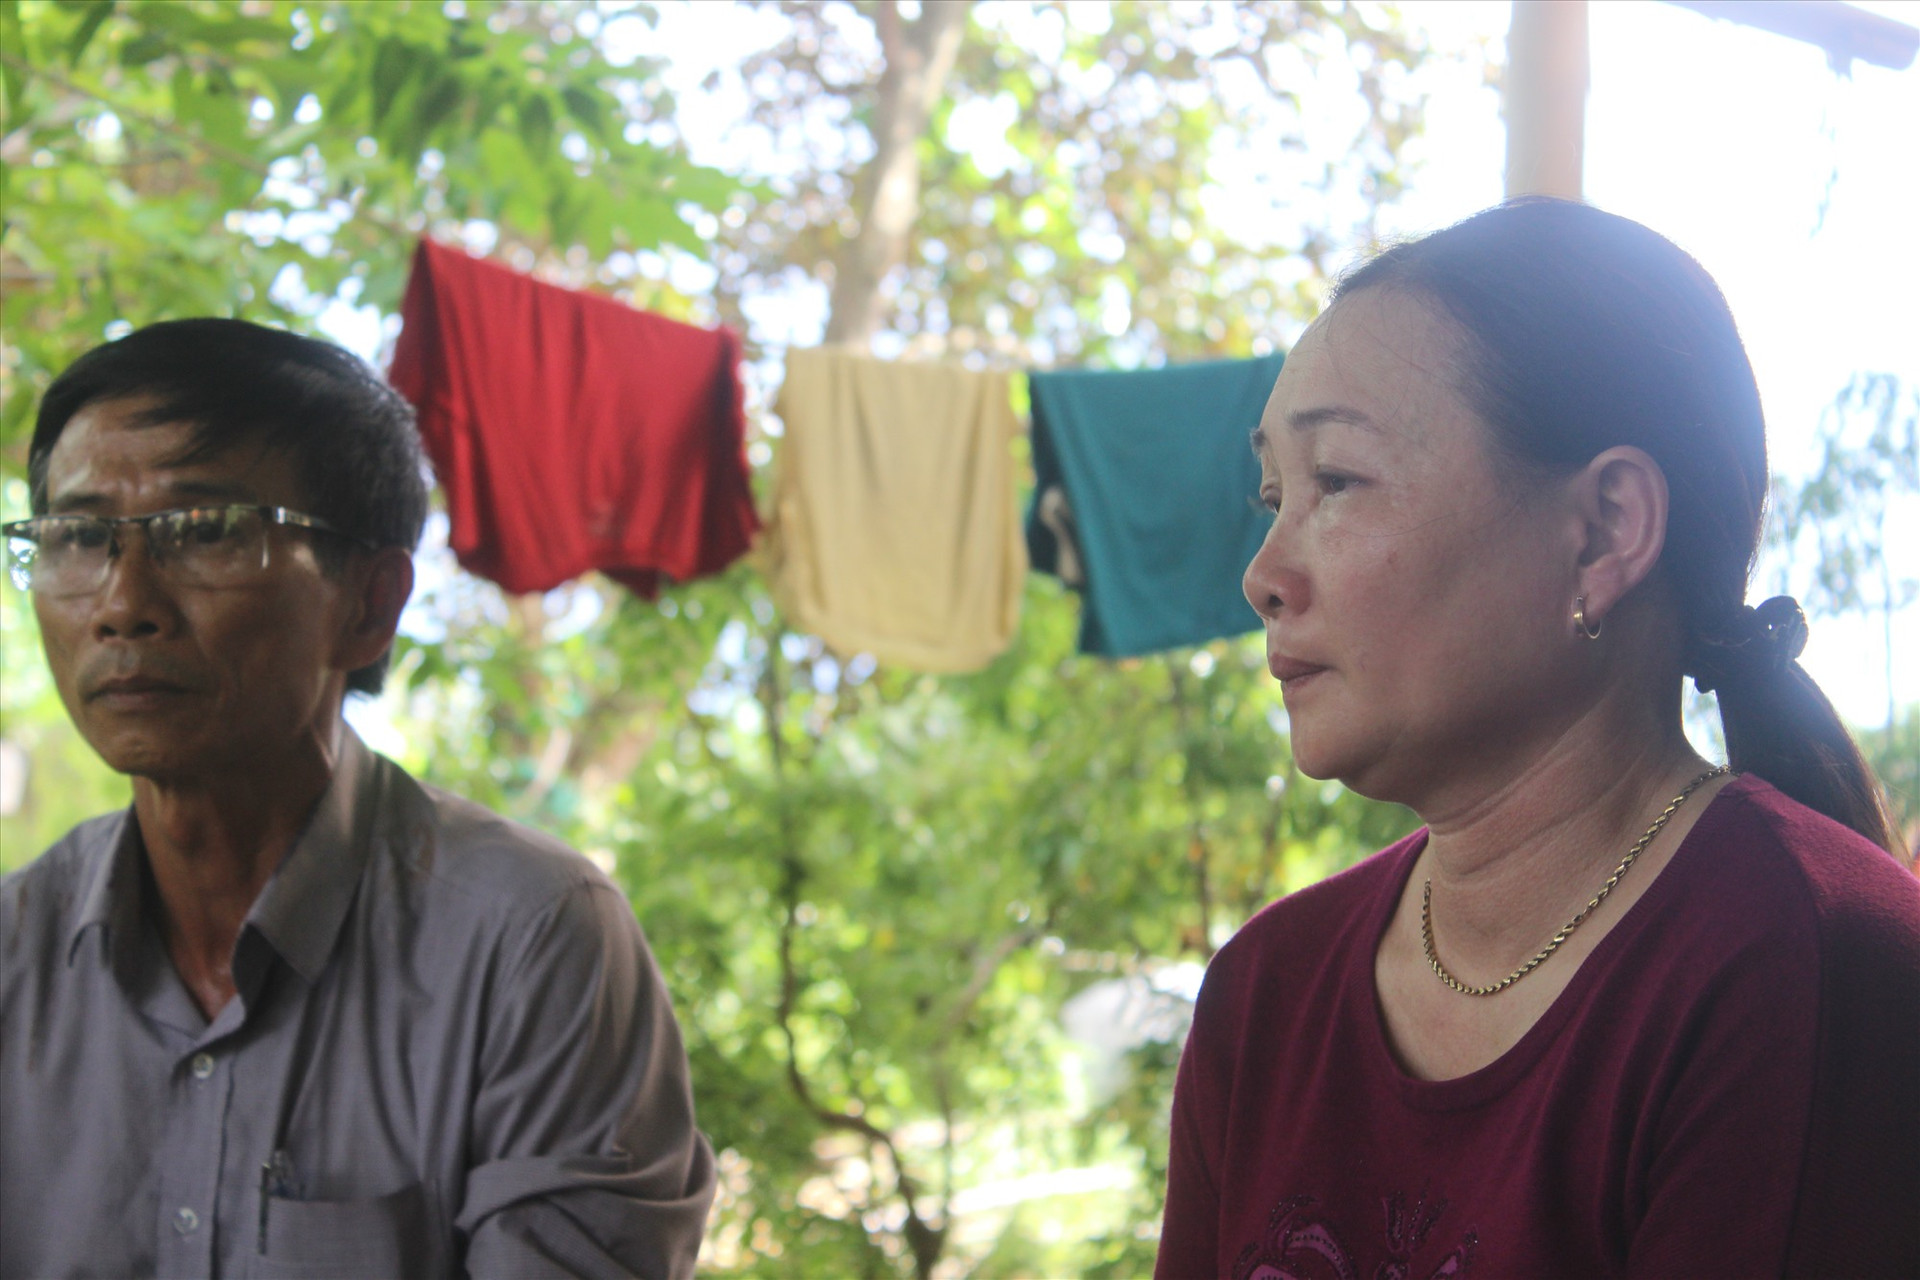 Đến trưa nay, chị Nguyễn Thị Đào mới biết chính xác chồng mình là một trong mười hai ngư dân vẫn còn mất tích trong vụ lốc xoáy là chìm tàu câu mực. Ảnh: T.C